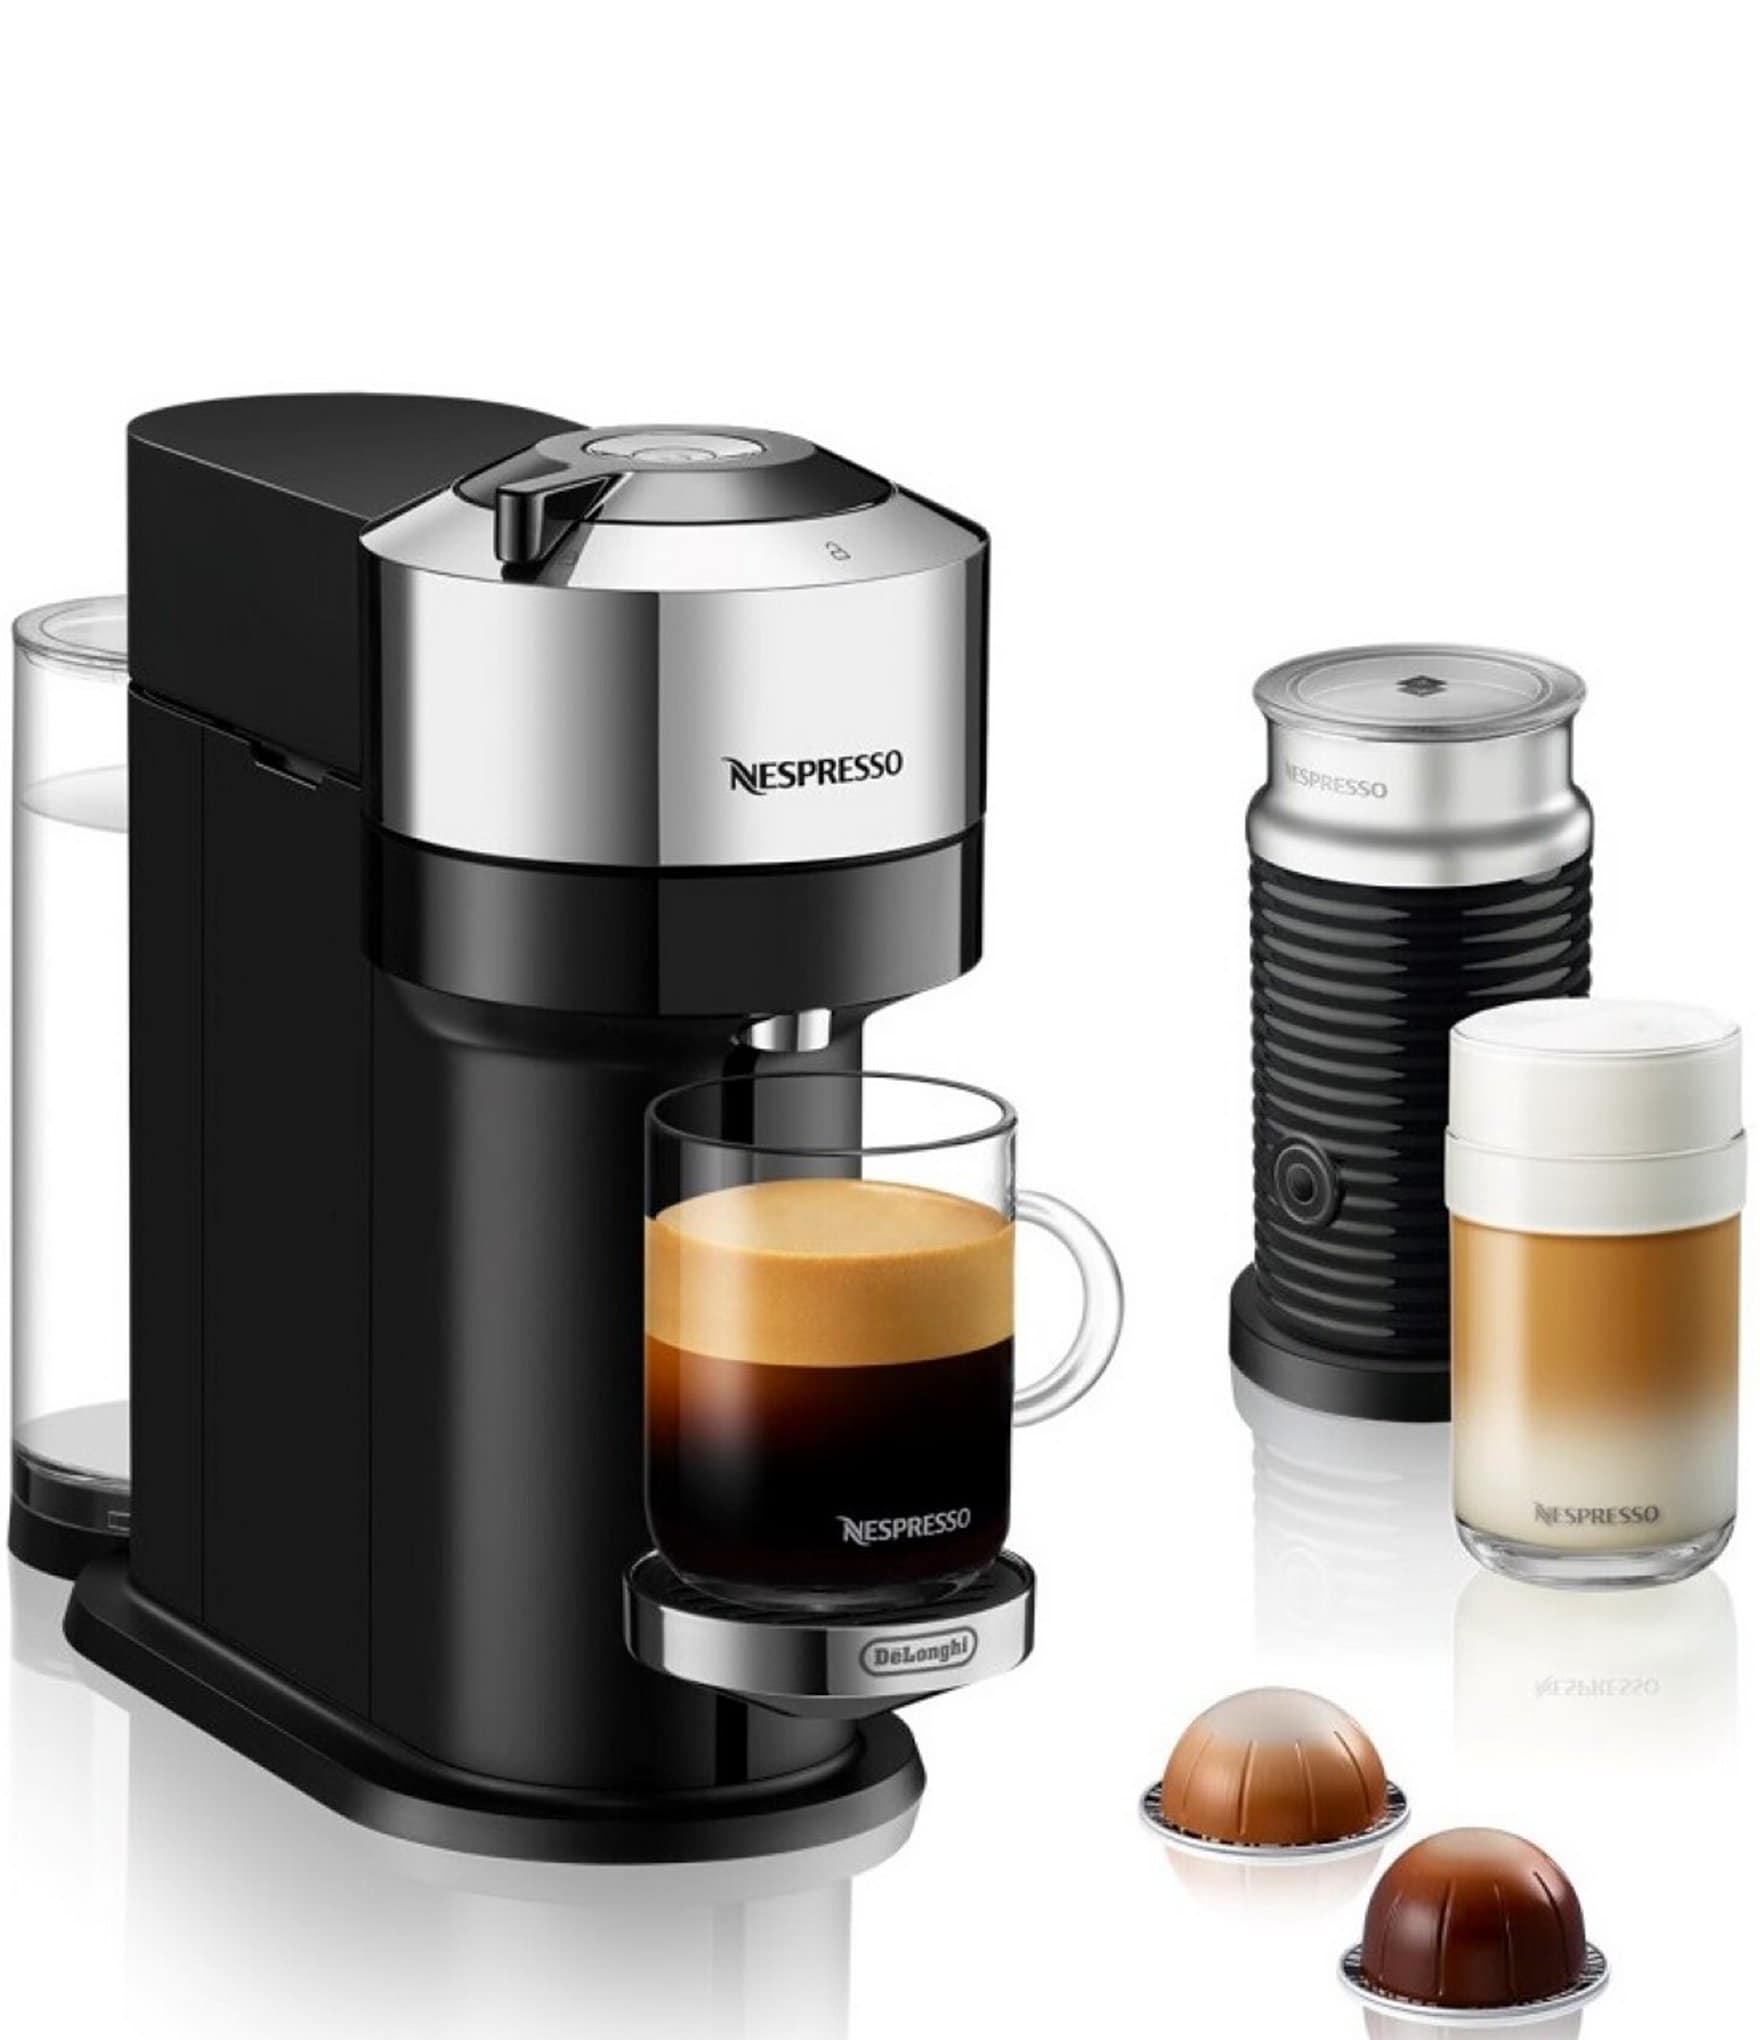 Nespresso Vertuo Next Deluxe Coffee and Espresso Maker by DeLonghi